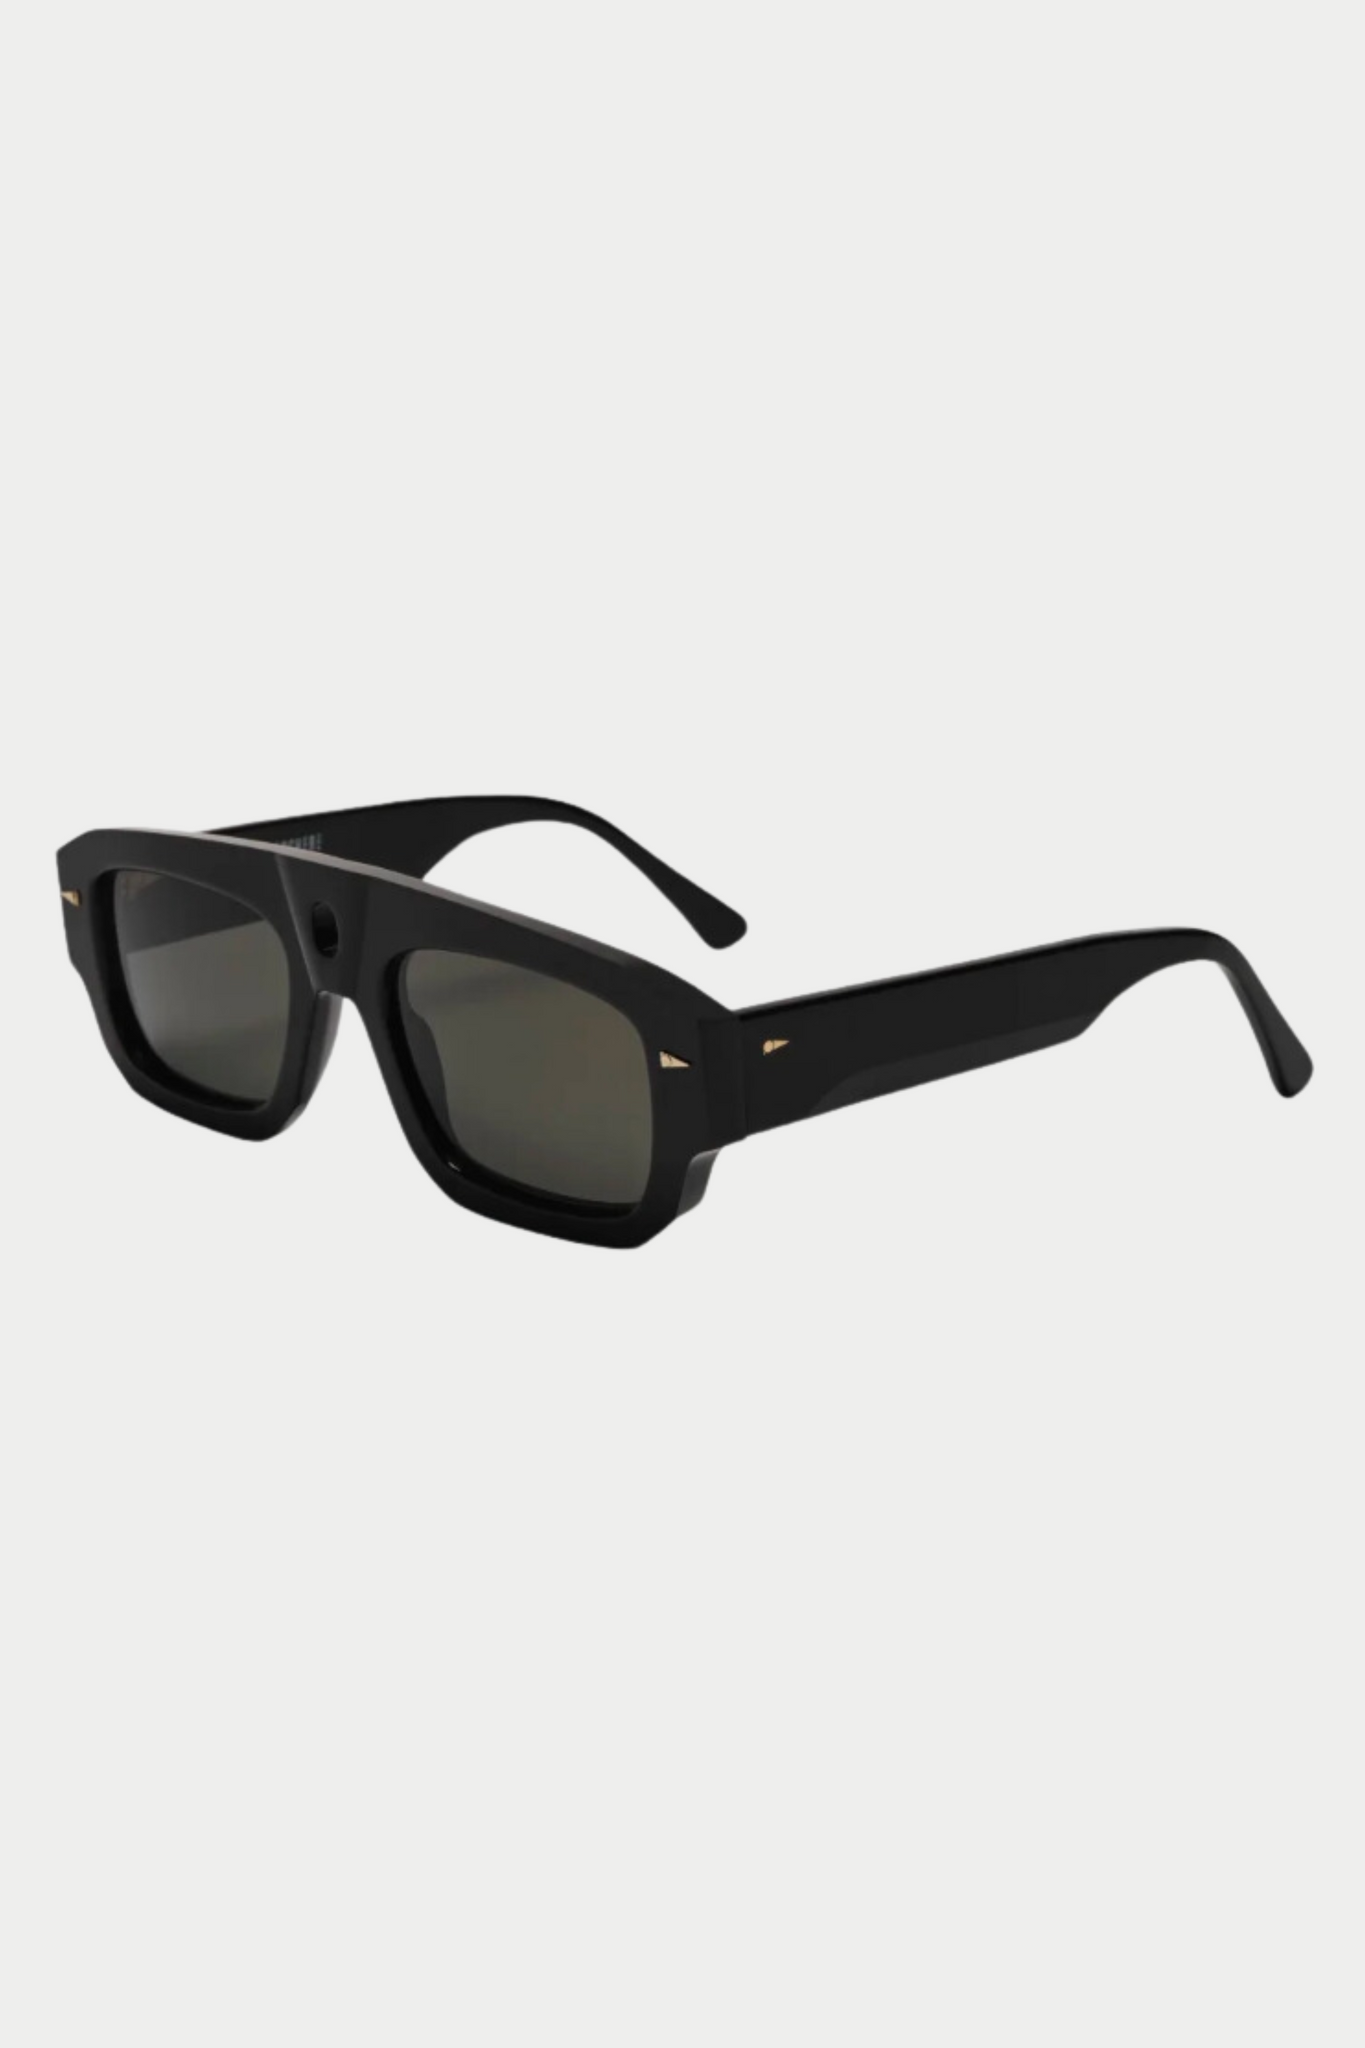 GAUCHERE - Sunglasses, Black